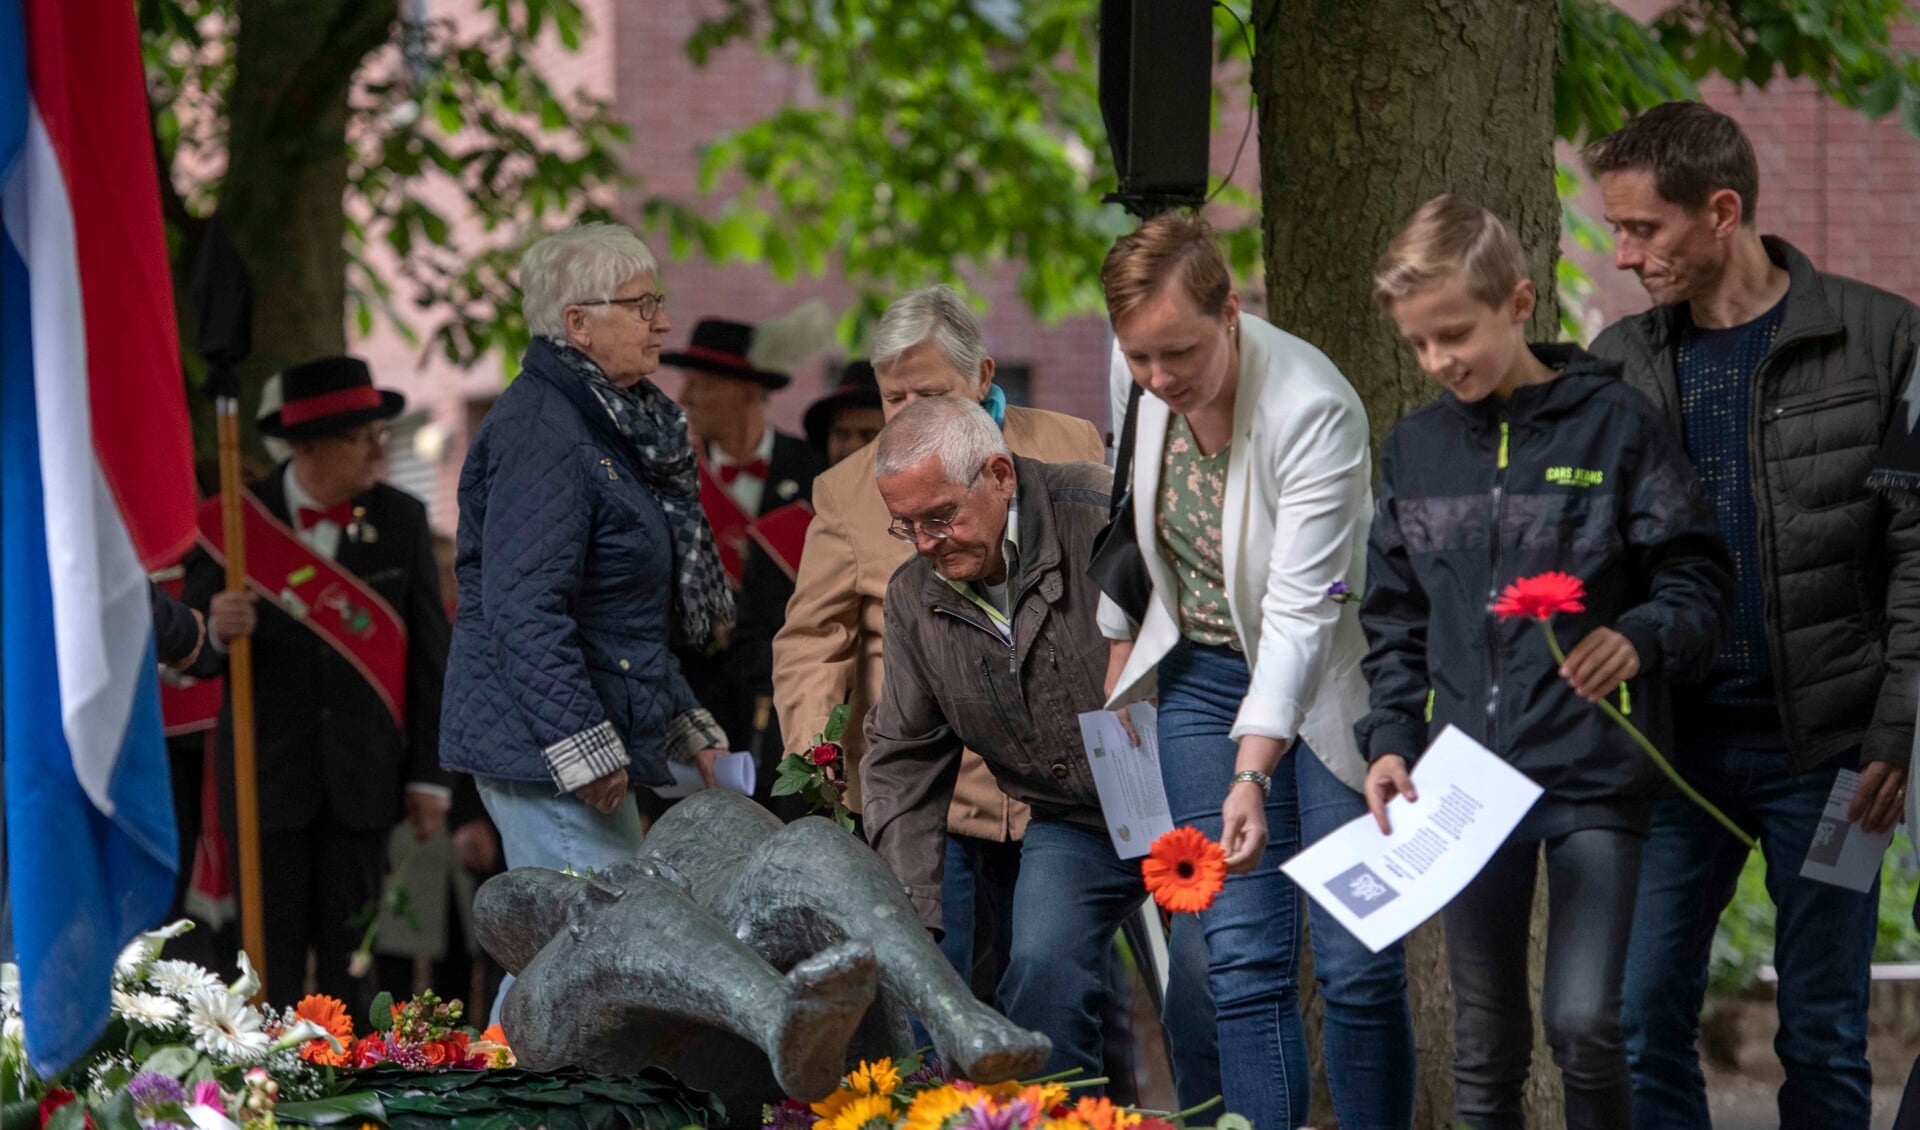 Bezoekers van de Dodenherdenking leggen bloemen op het oorlogsmonument in het Moussaultpark in Asten. (Foto: Hein van Bakel)